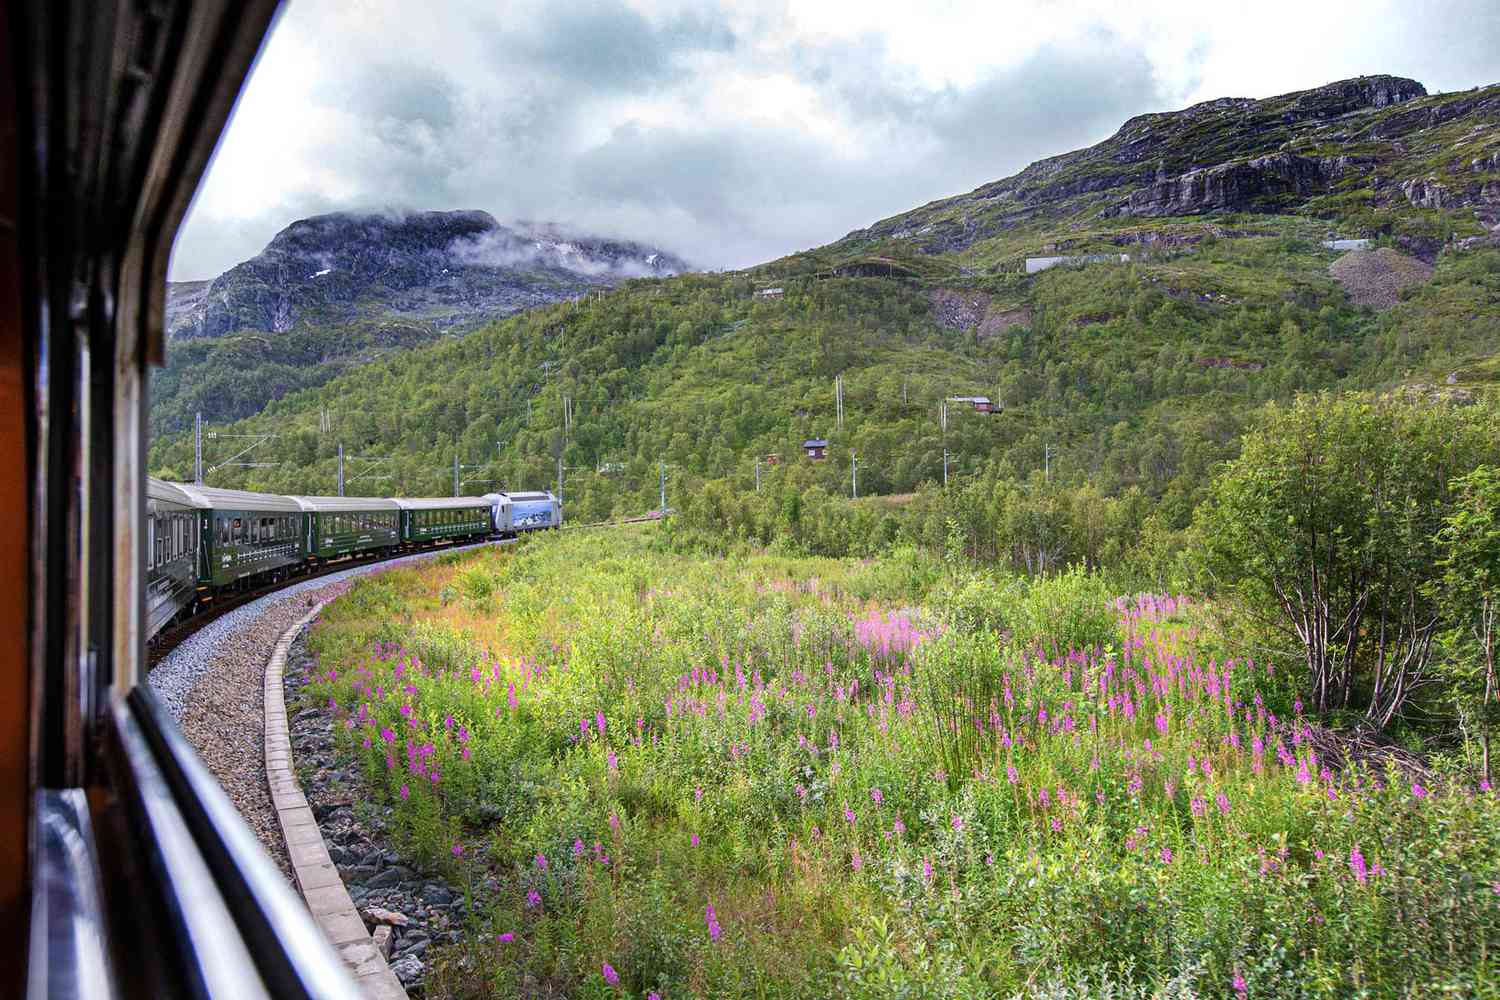 Vue spectaculaire depuis le célèbre train norvégien Flåm qui monte à grande vitesse en direction de la gare de Myrdal.  Considéré comme l'un des plus beaux trajets ferroviaires de la planète.